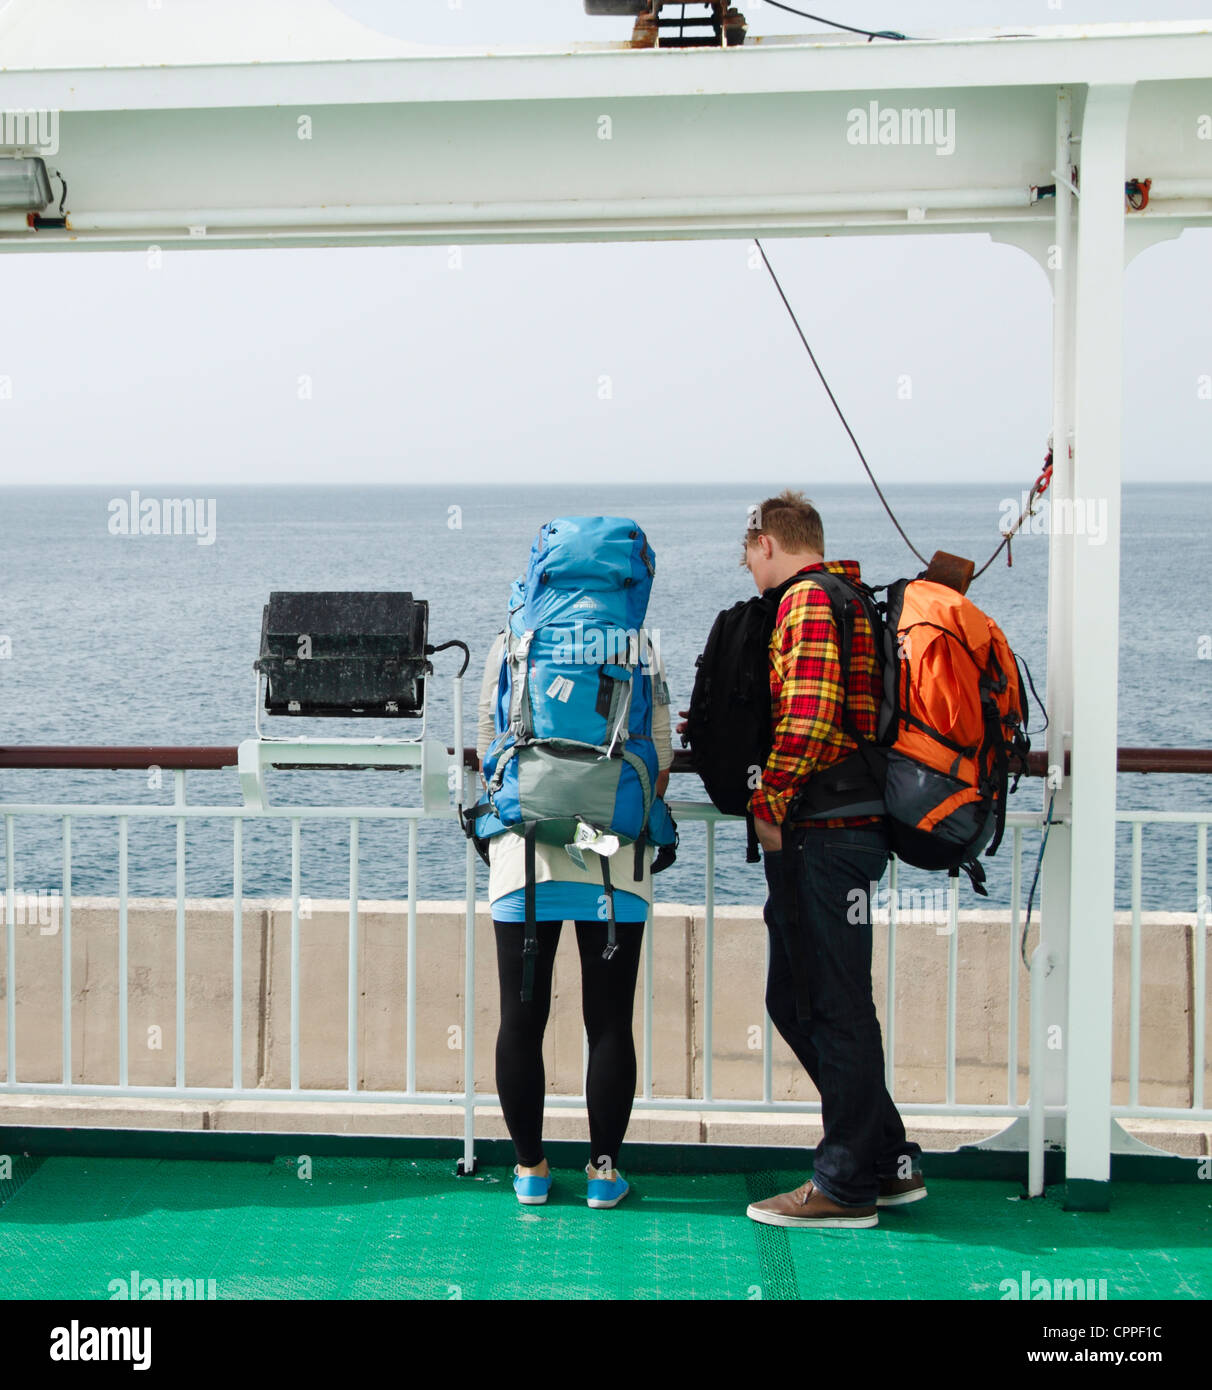 Les jeunes backpackers sur inter island ferry dans les îles Canaries, Espagne Banque D'Images